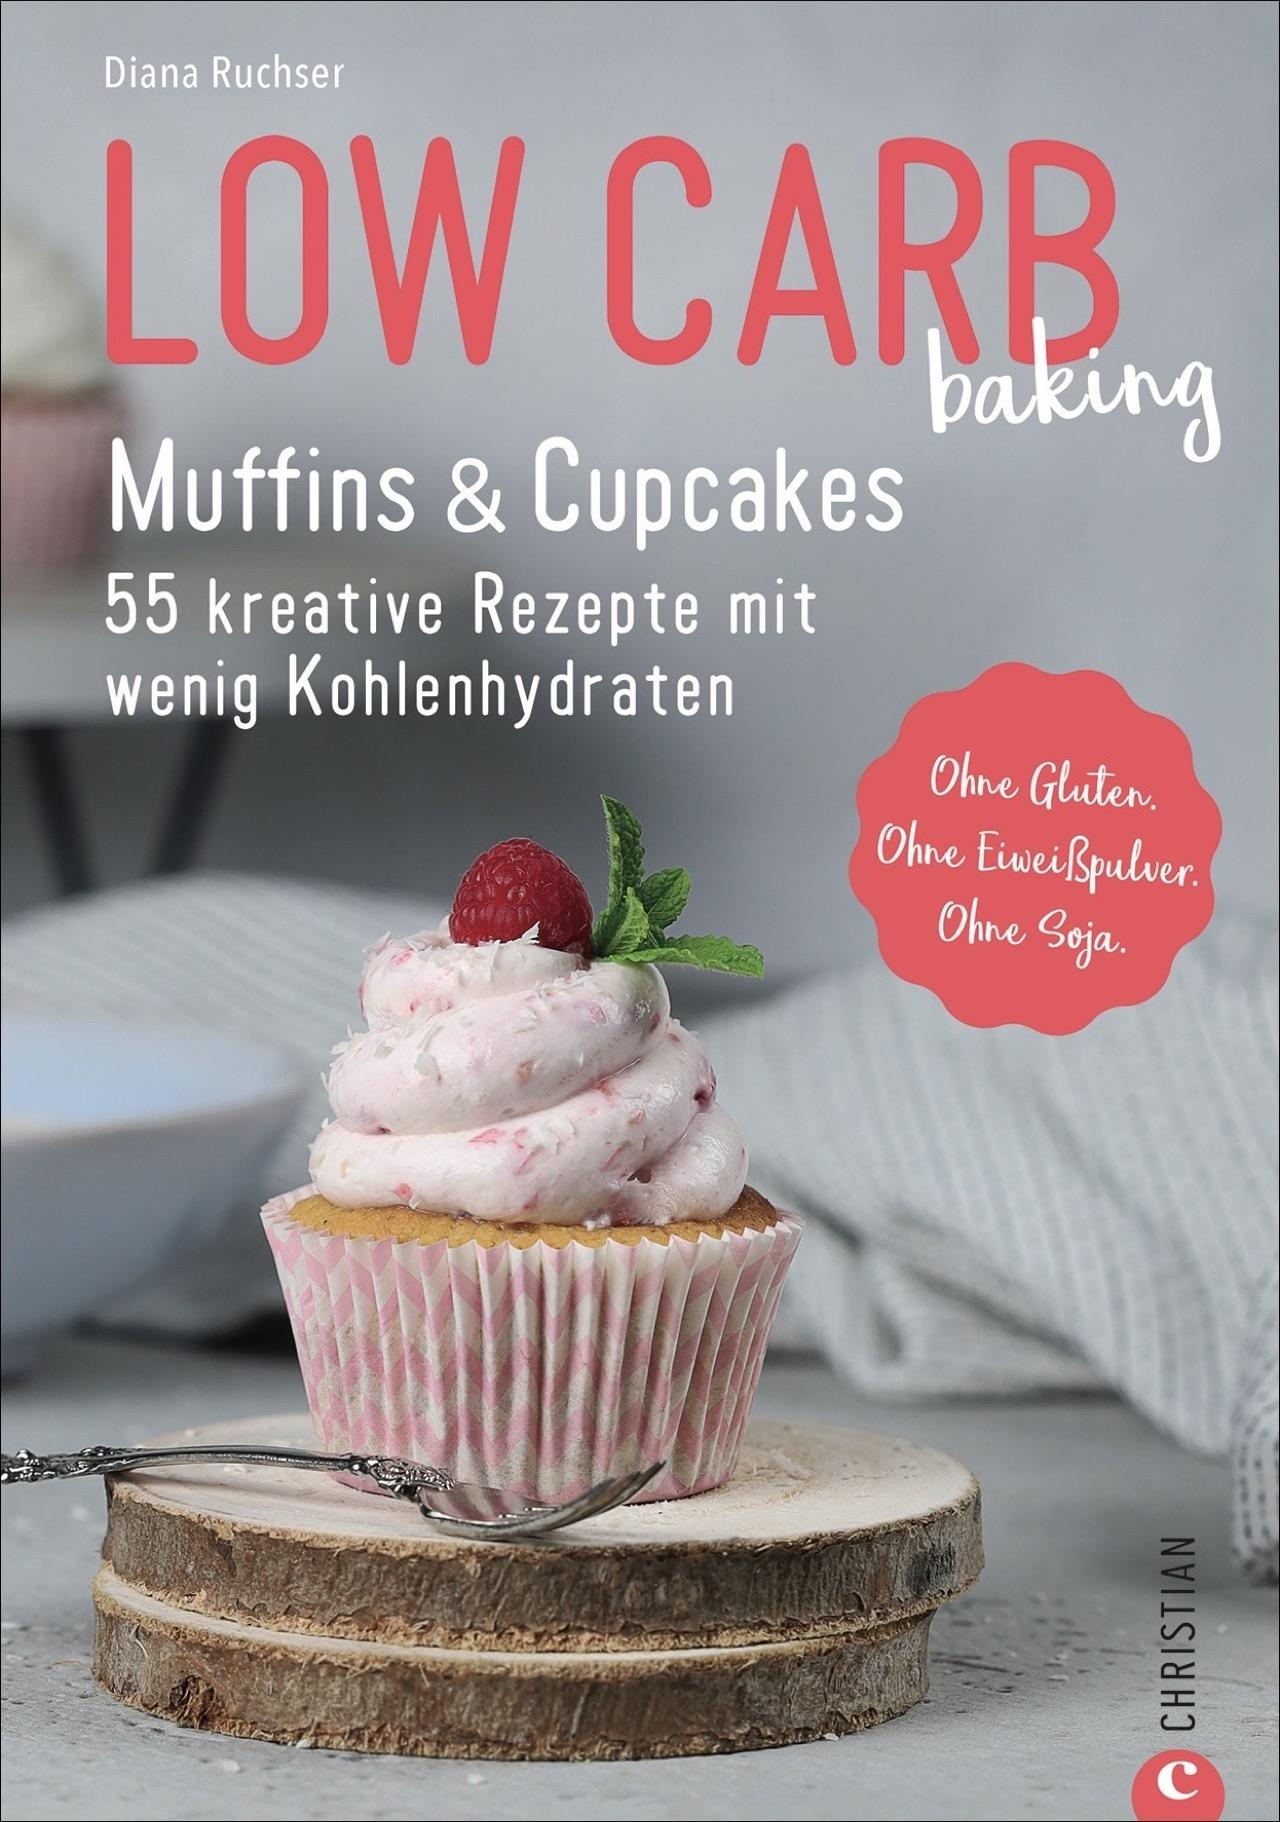 Low Carb baking. Muffins & Cupcakes, Ratgeber von Diana Ruchser